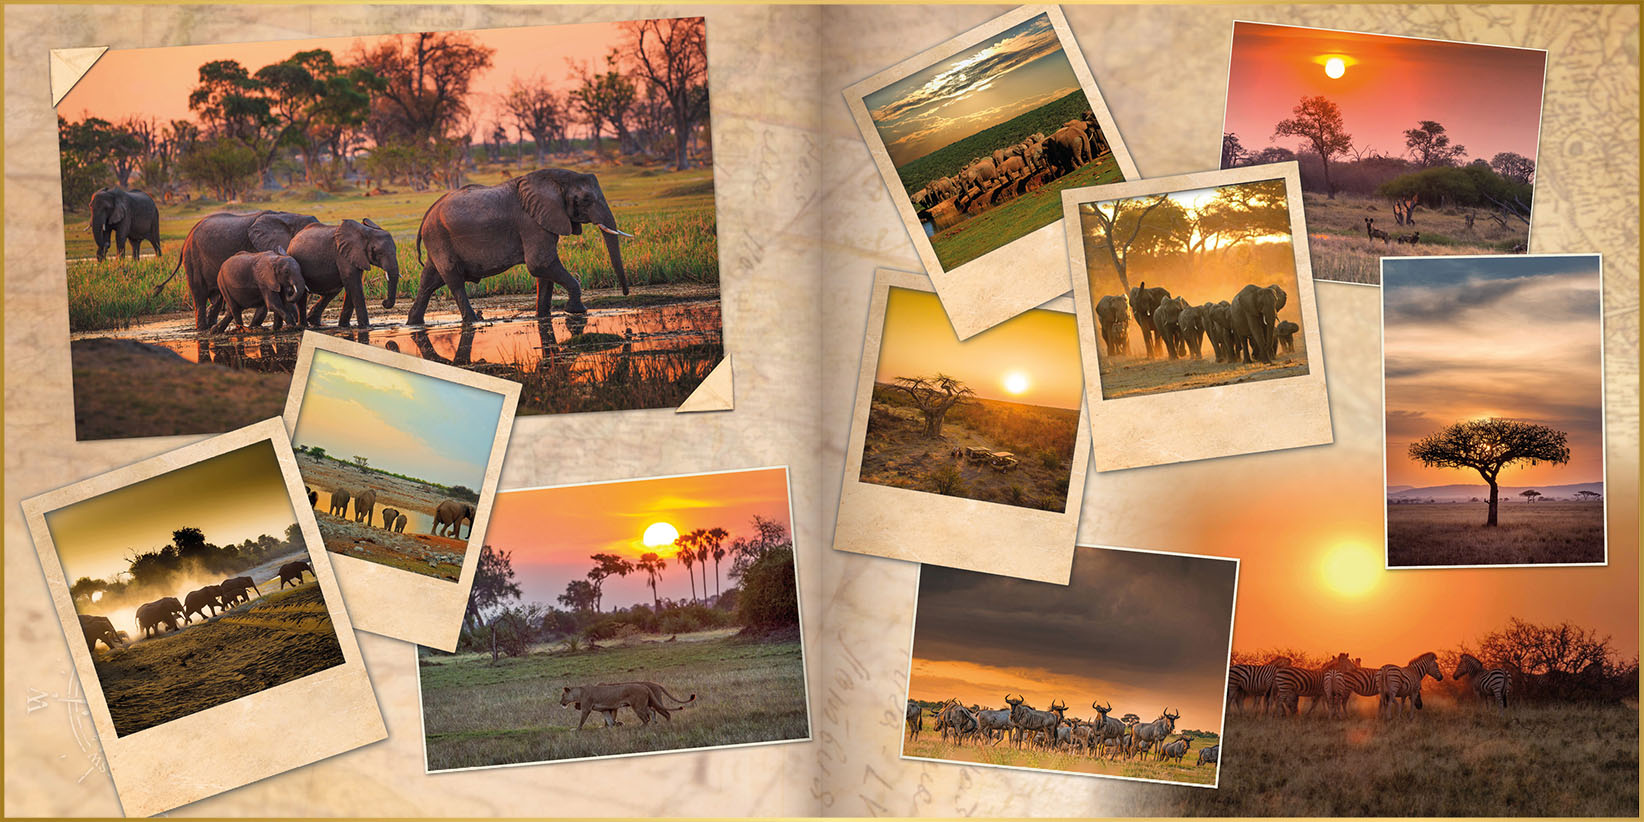 Fotoboek in ontwerpstijl uniek met foto's van olifanten, leeuwen, gnoe's wilde honden en mooie zonsondergangen in Botswana